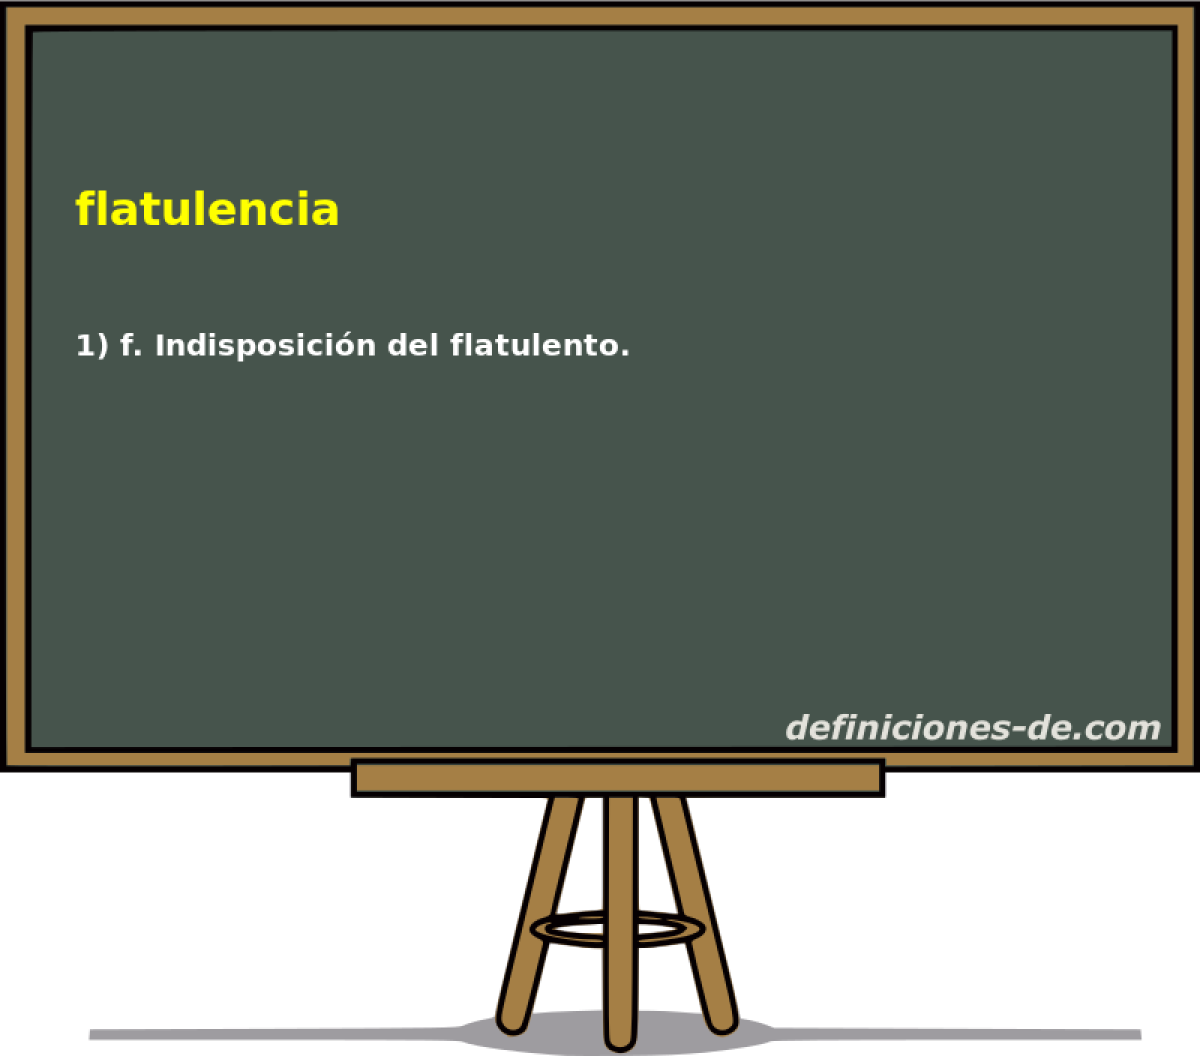 flatulencia 